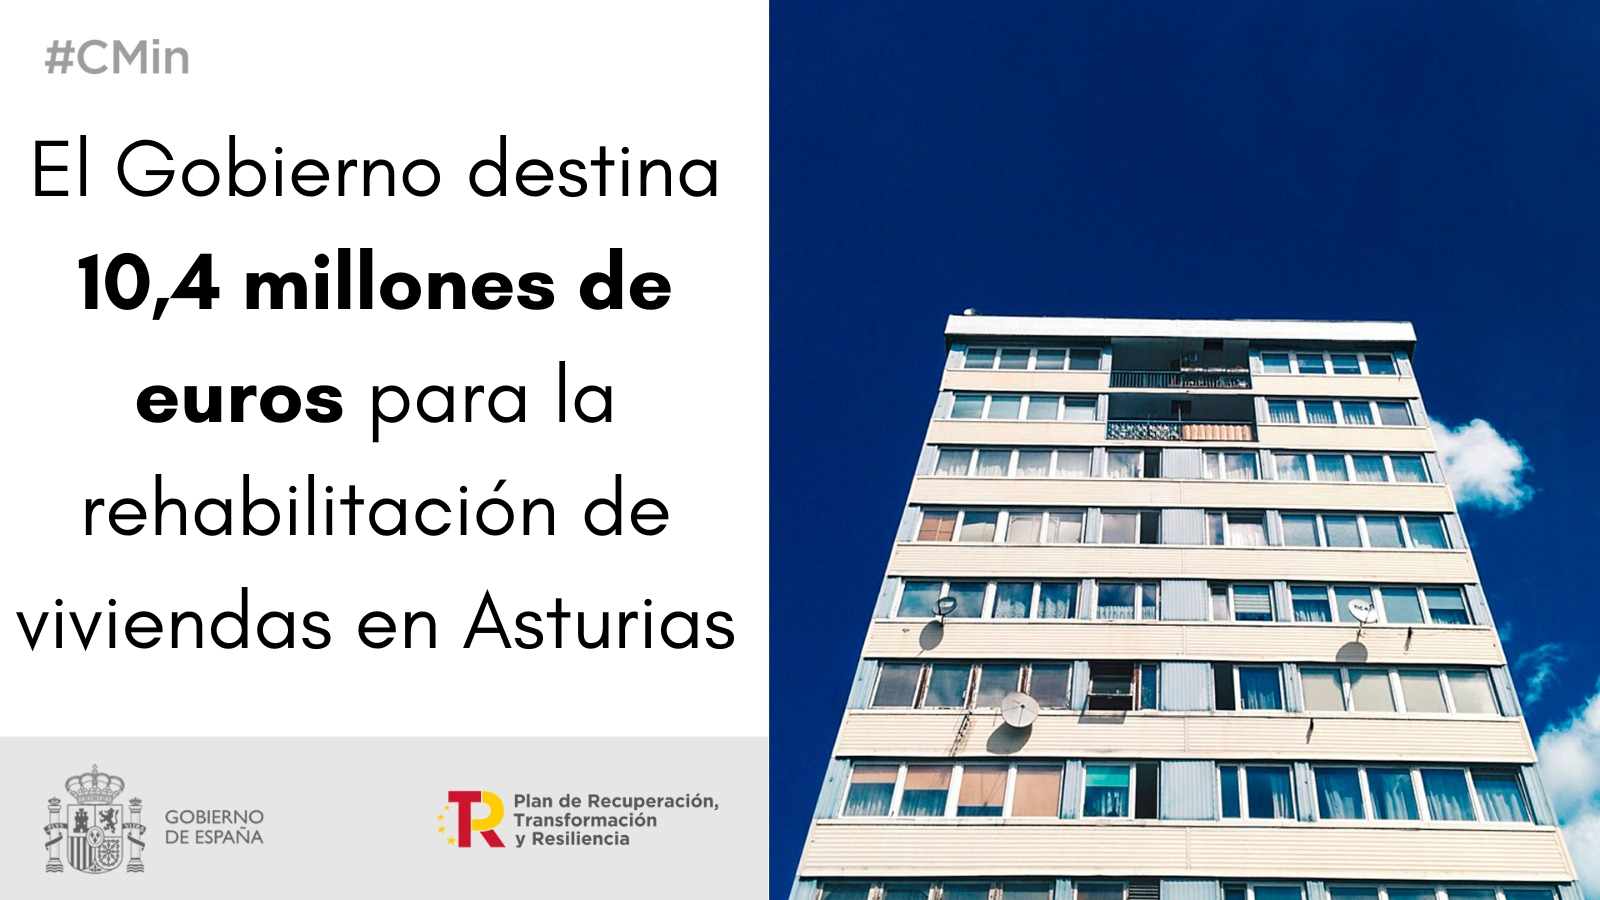 El Gobierno destina más de 10,4 millones de euros a Asturias para la rehabilitación de viviendas